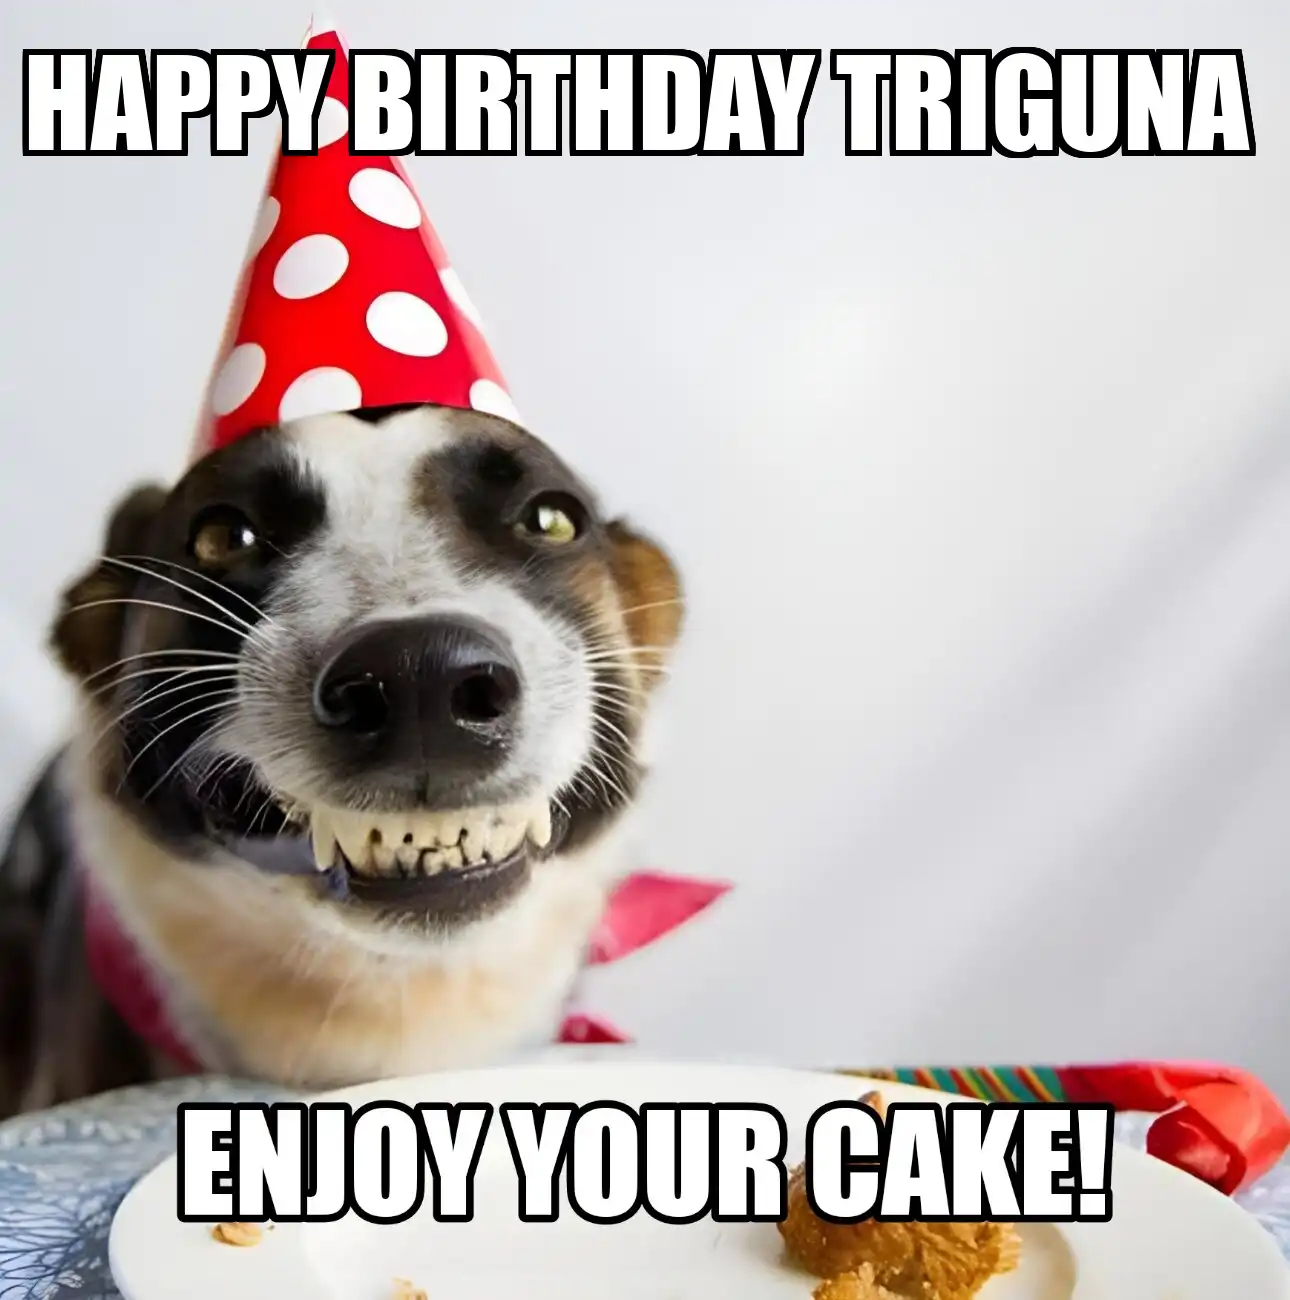 Happy Birthday Triguna Enjoy Your Cake Dog Meme